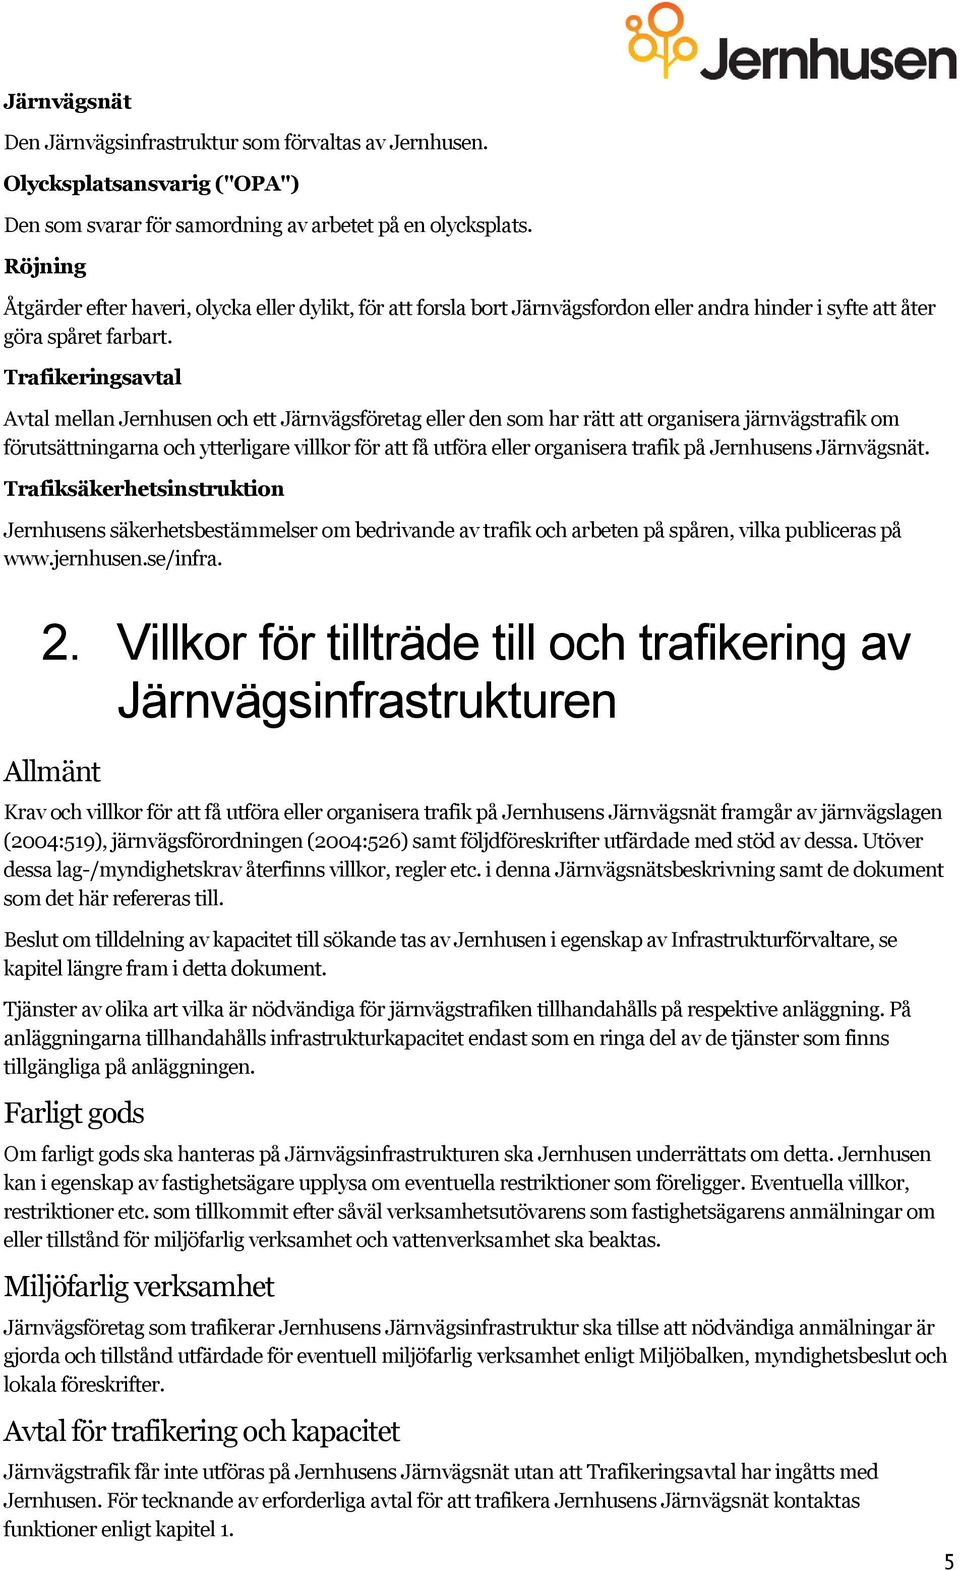 Trafikeringsavtal Avtal mellan Jernhusen och ett Järnvägsföretag eller den som har rätt att organisera järnvägstrafik om förutsättningarna och ytterligare villkor för att få utföra eller organisera